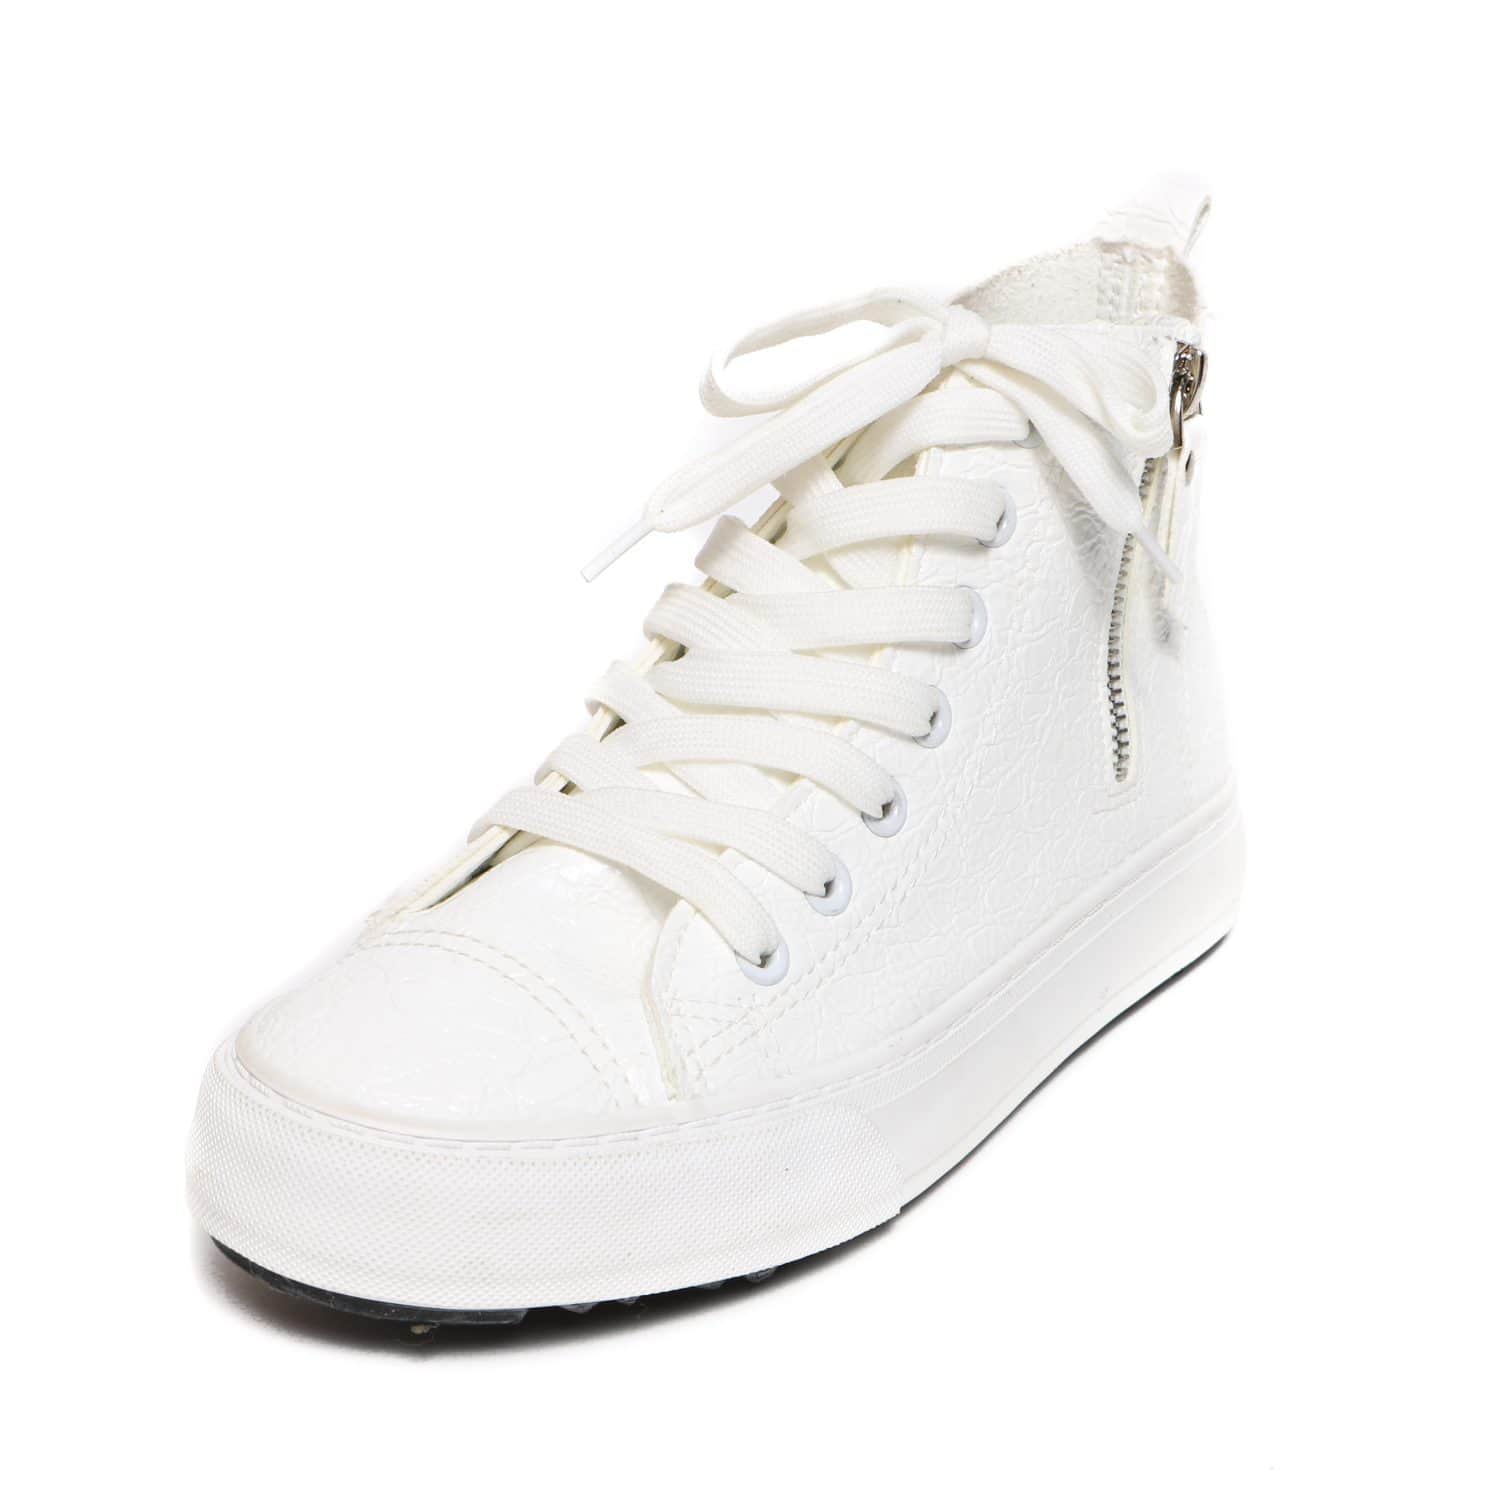 Style Ked's Shoe on White background